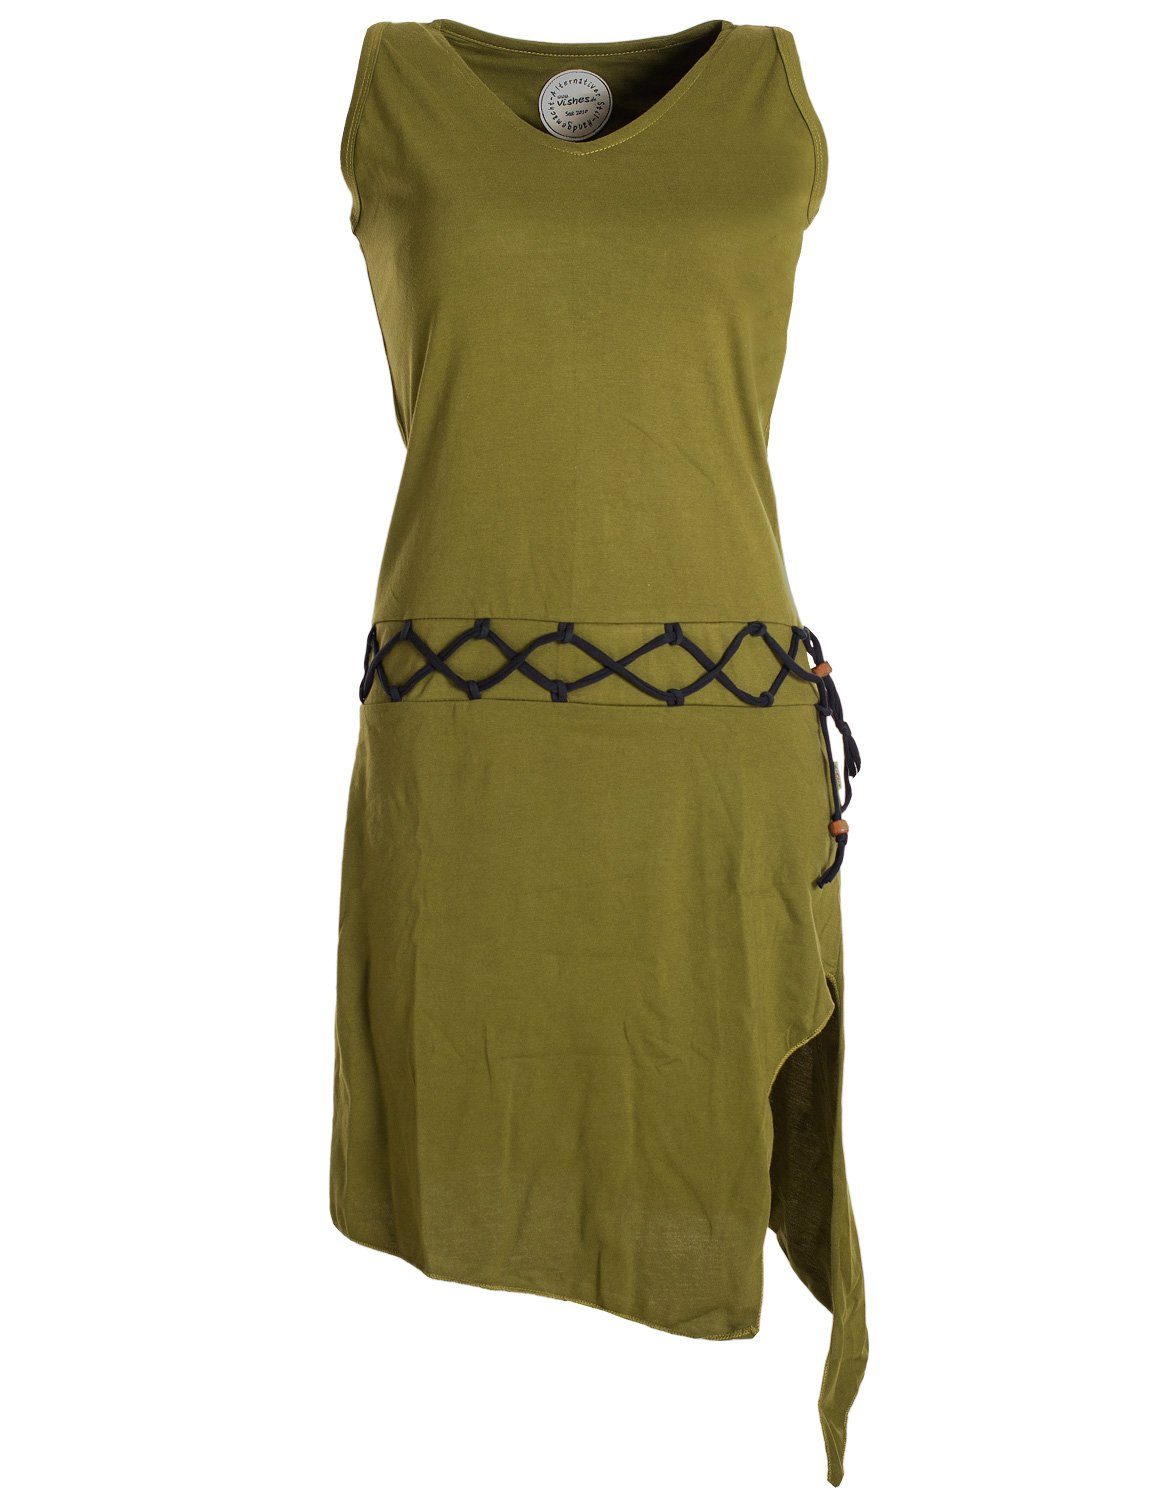 Vishes Sommerkleid Ärmelloses Kleid asymmetrisch Beinausschnitt Gürtel-Schnürung Hippie, Boho, Goa Elfen Style olive | Sommerkleider